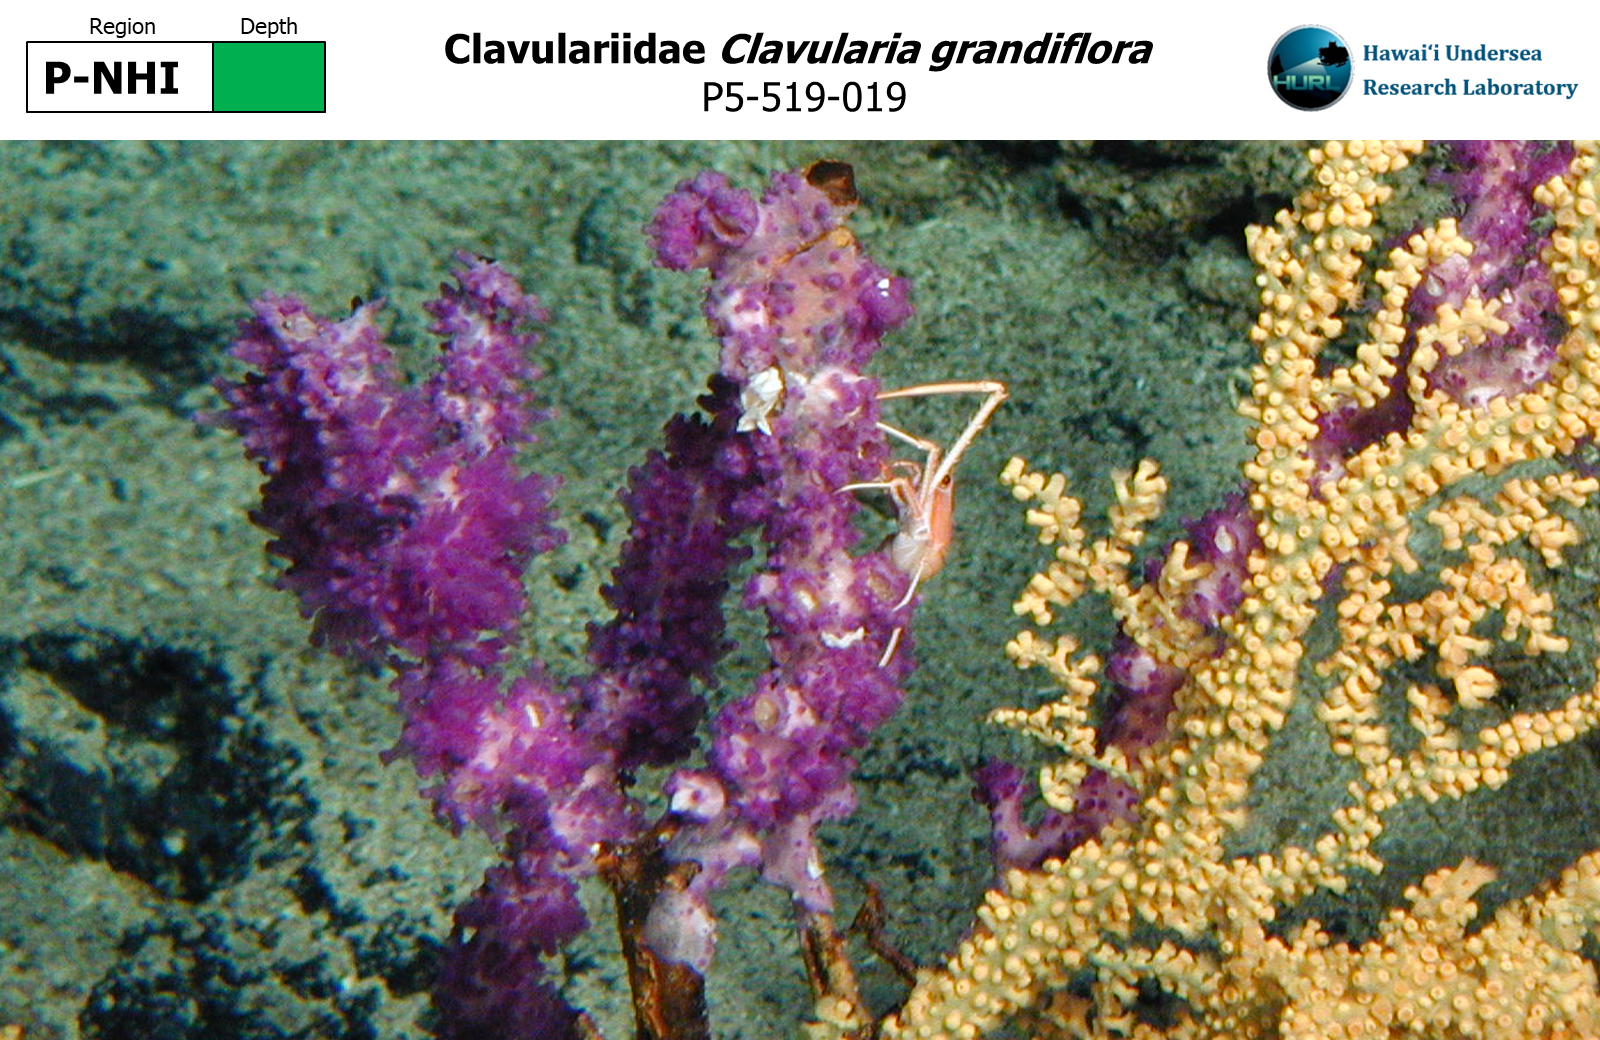 Clavularia grandiflora,P5-519-019,P-NHI,G,P5-519